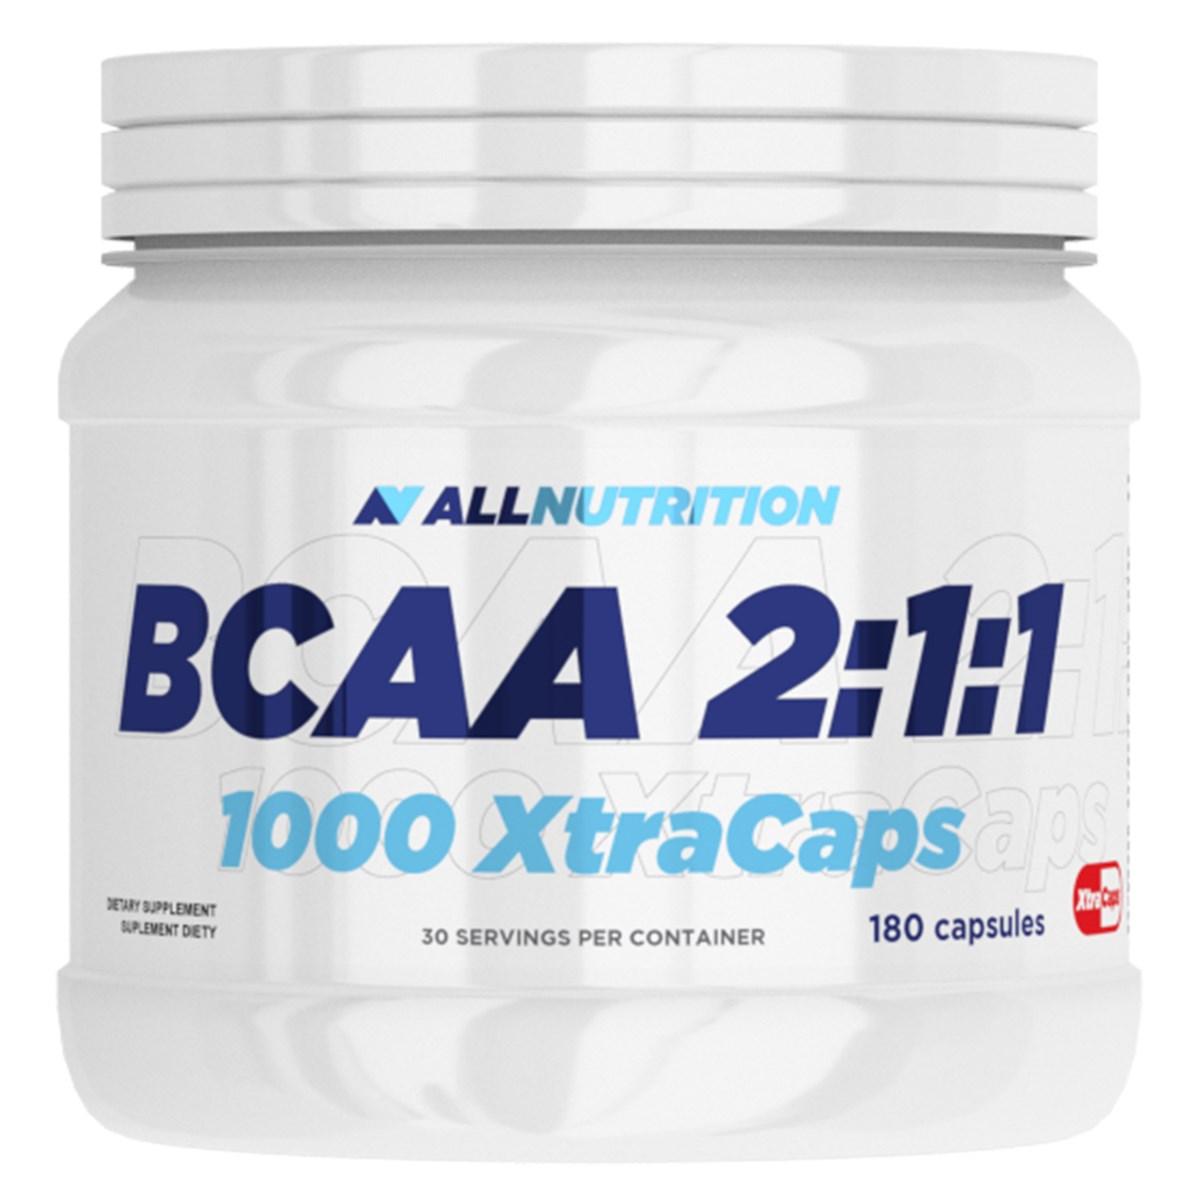 БЦАА AllNutrition BCAA 2:1:1 1000 XtraCaps (180 капс) оллнутришн ,  мл, AllNutrition. BCAA. Снижение веса Восстановление Антикатаболические свойства Сухая мышечная масса 